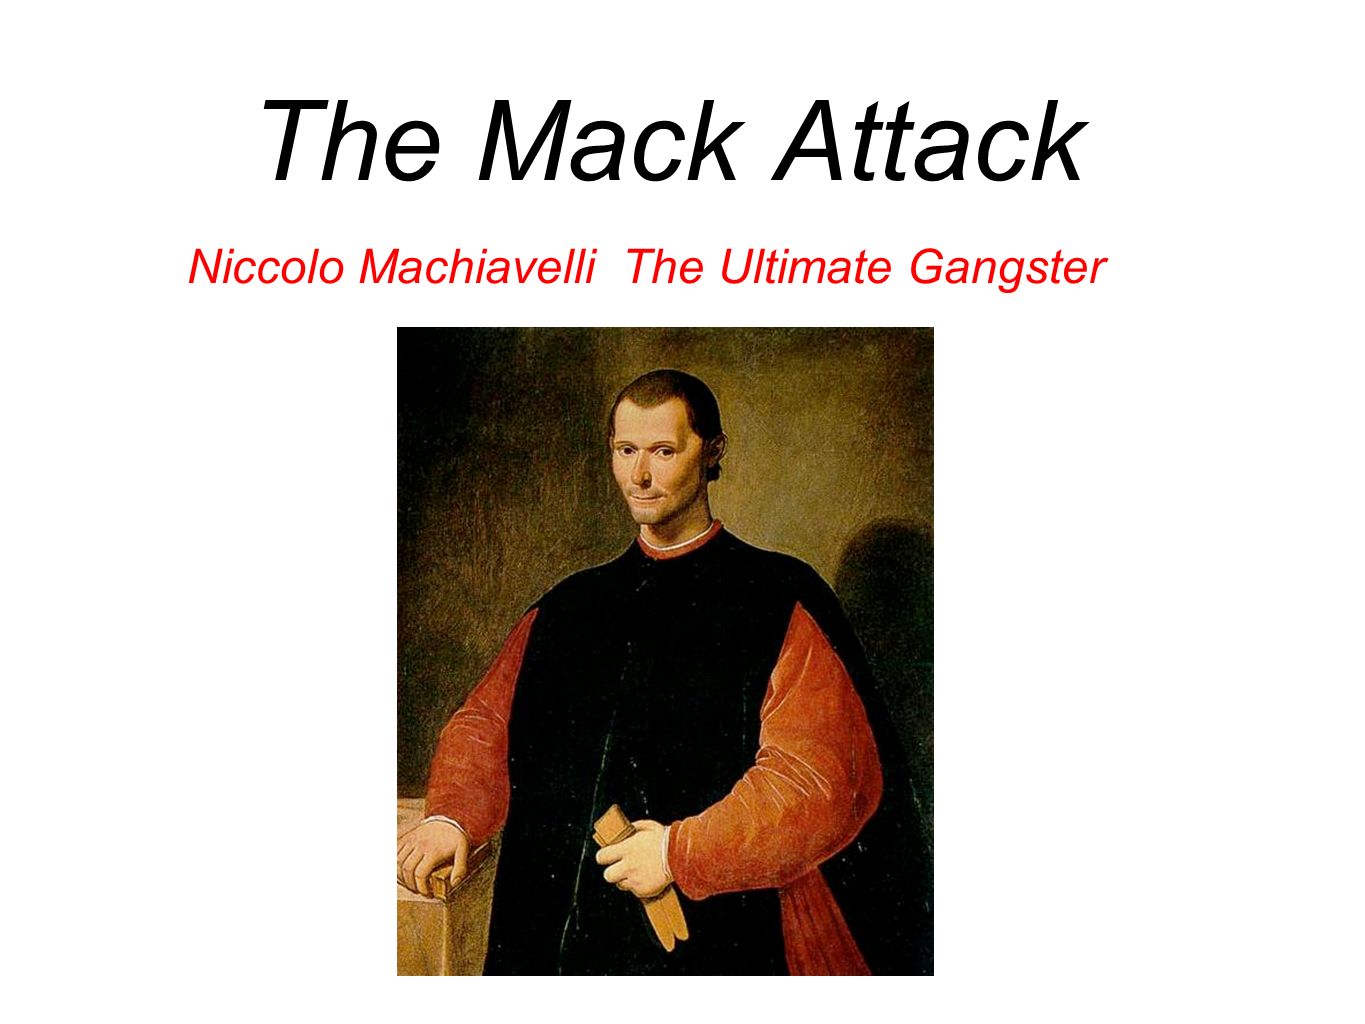 Machiavelli: Cruelty Well Used